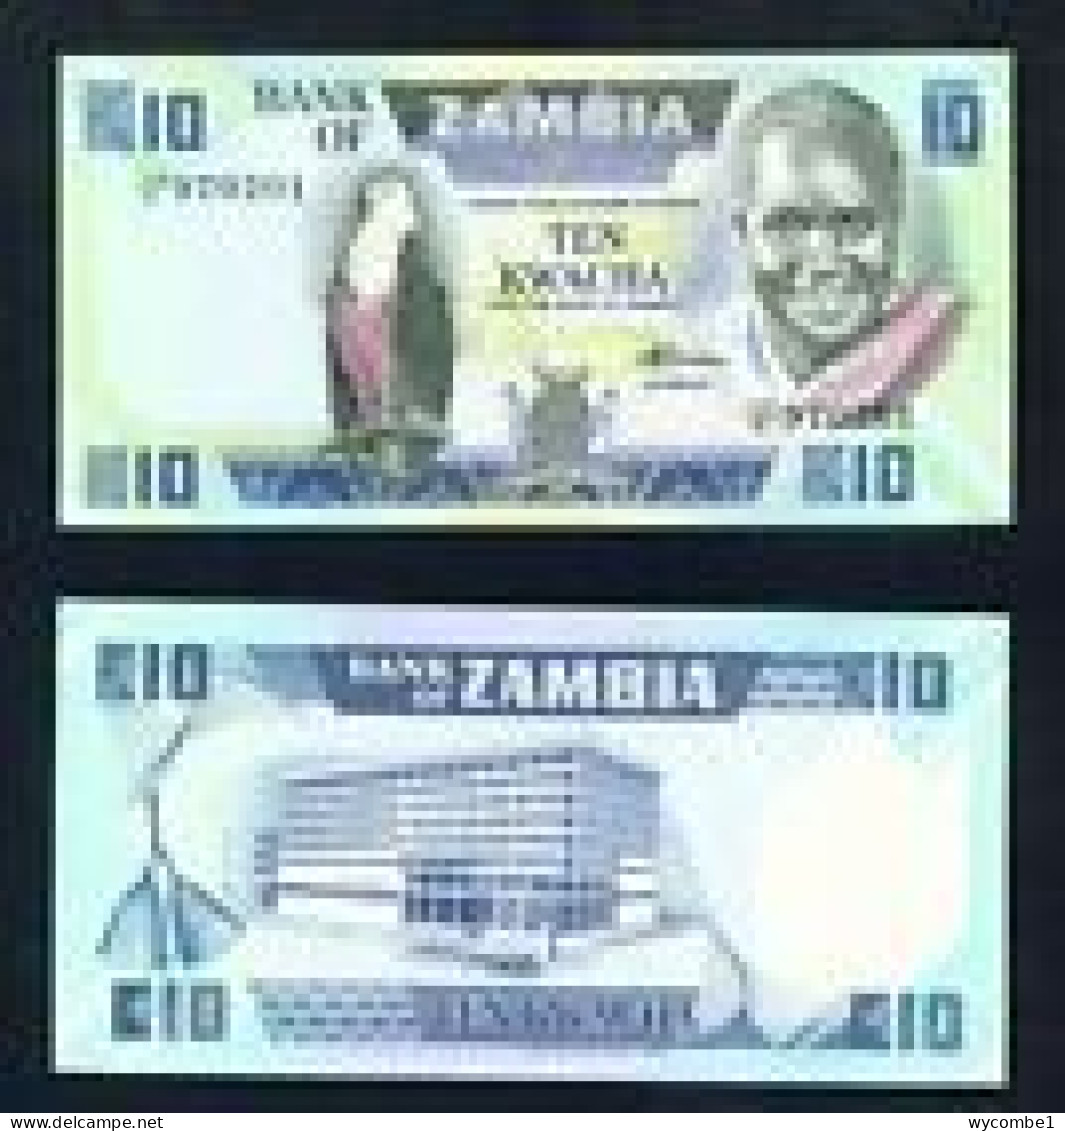 ZAMBIA -  1988 10 Kwacha UNC  Banknote - Zambie